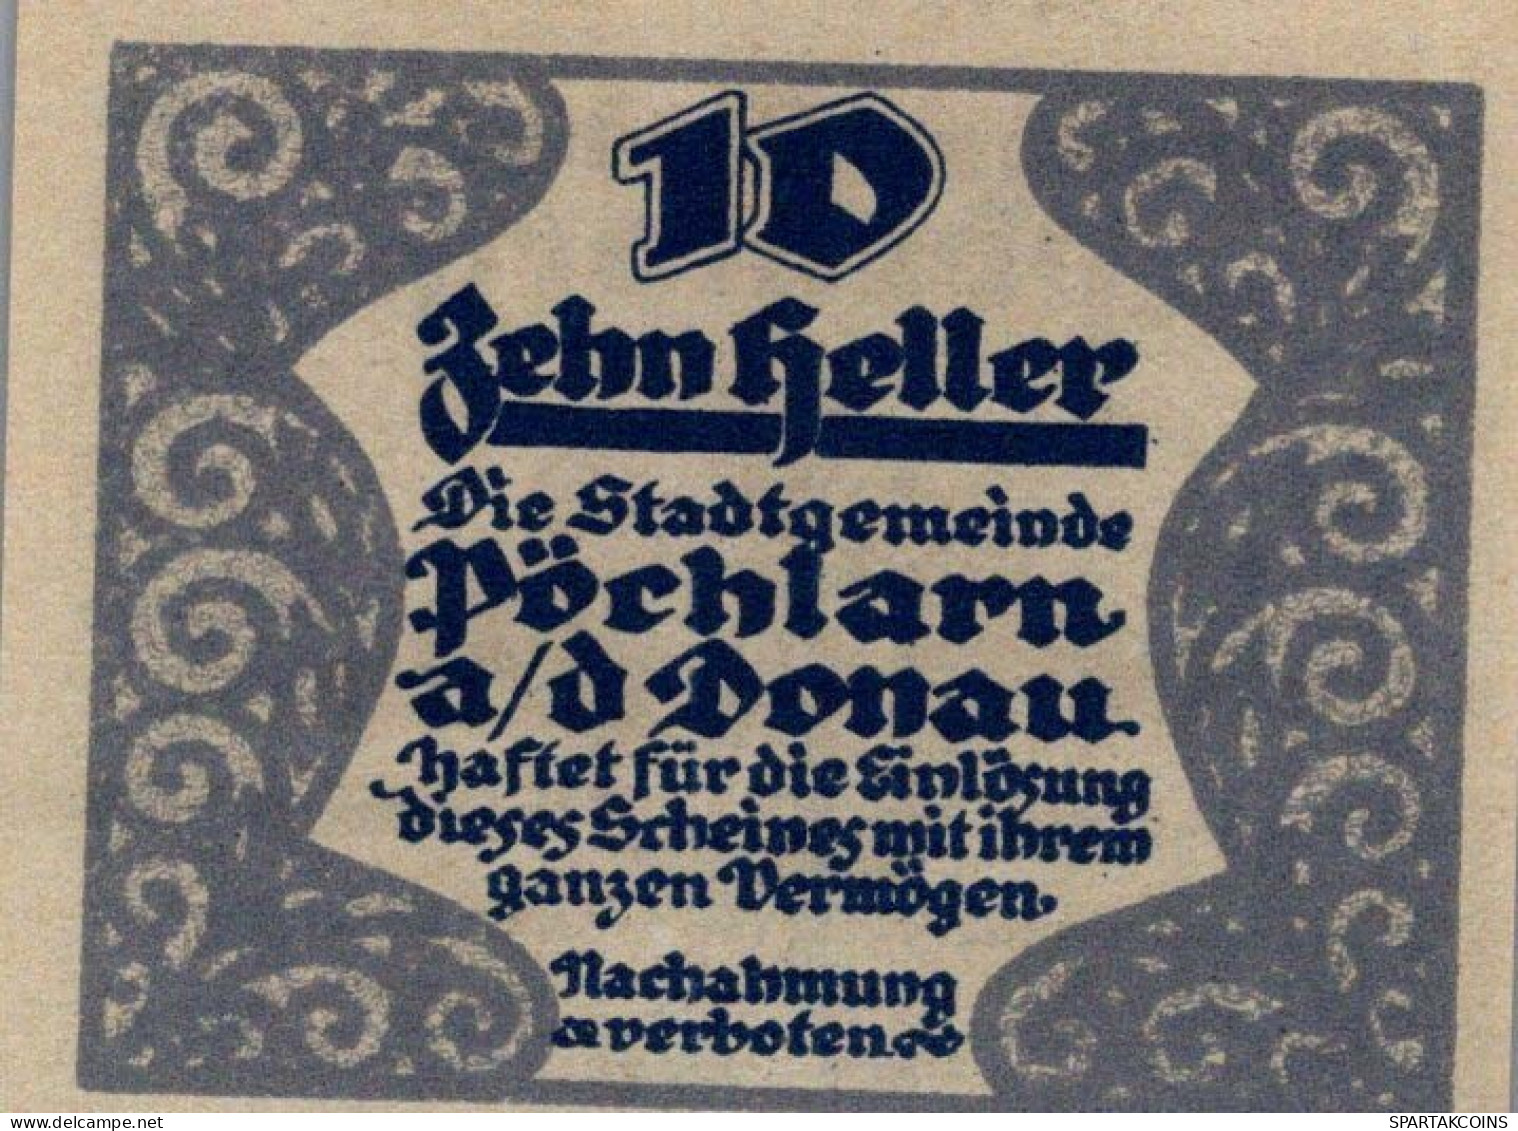 10 HELLER 1920 Stadt PoCHLARN Niedrigeren Österreich UNC Österreich Notgeld #PH562 - Lokale Ausgaben